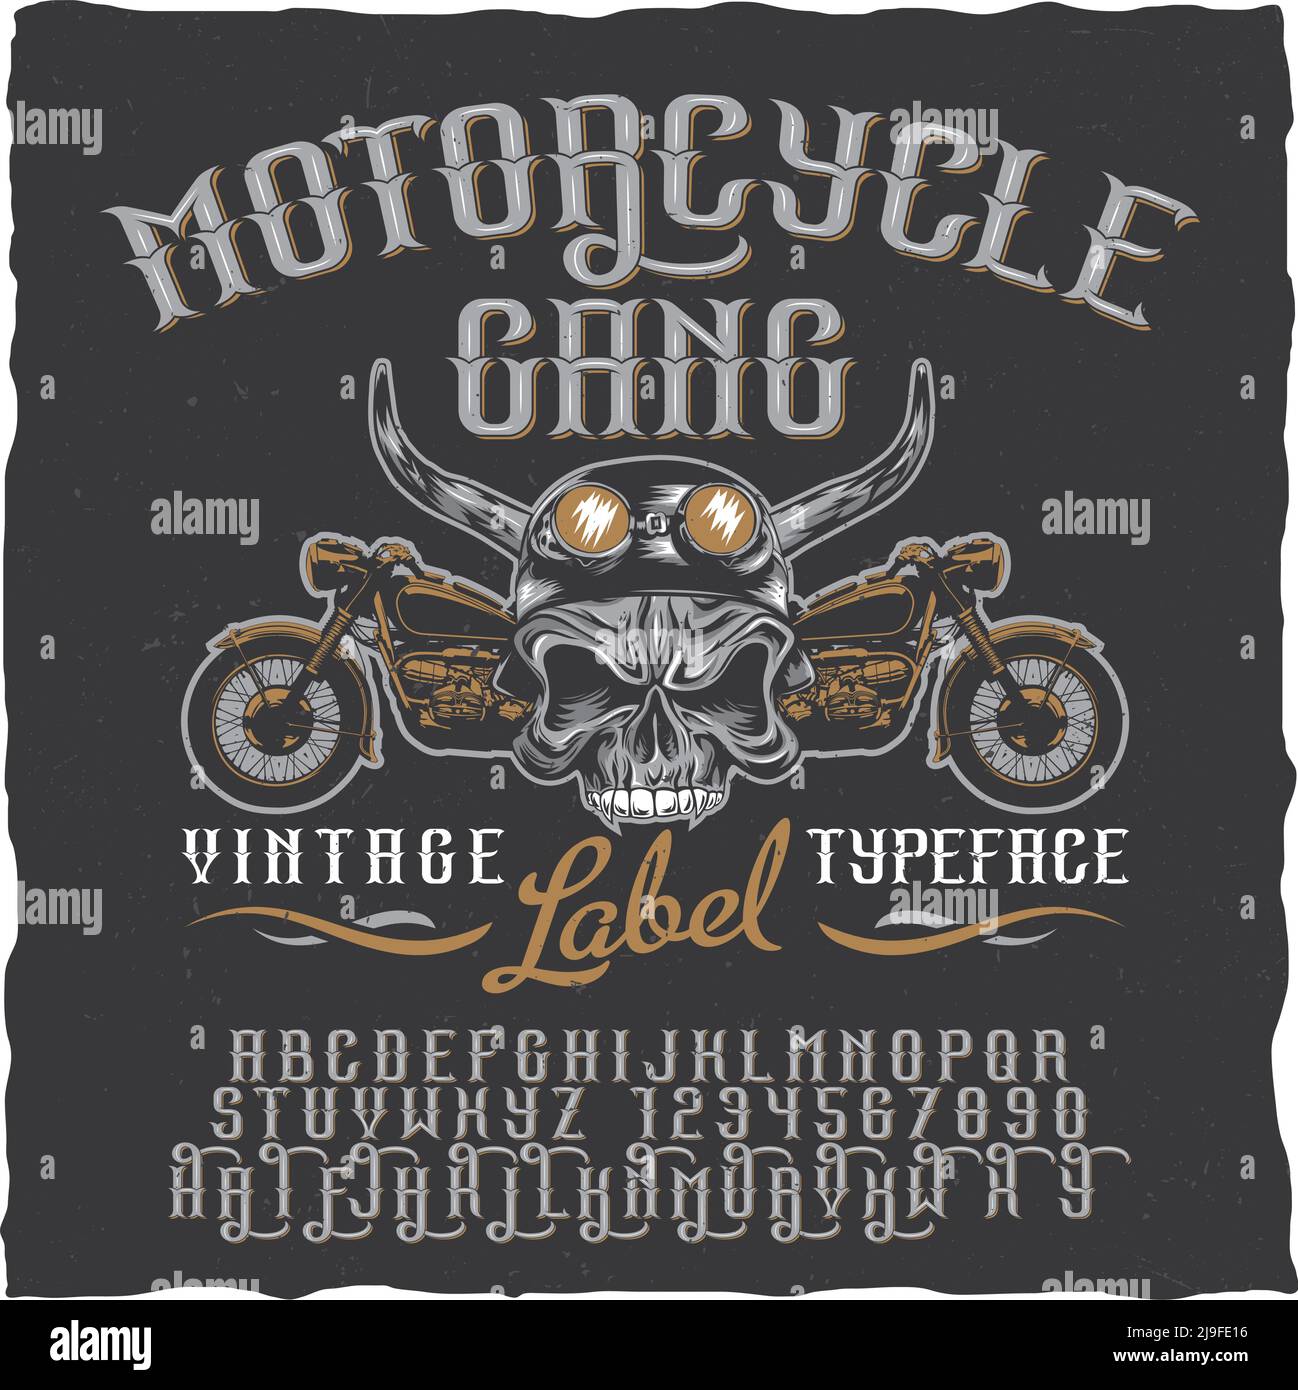 vintage biker gangs